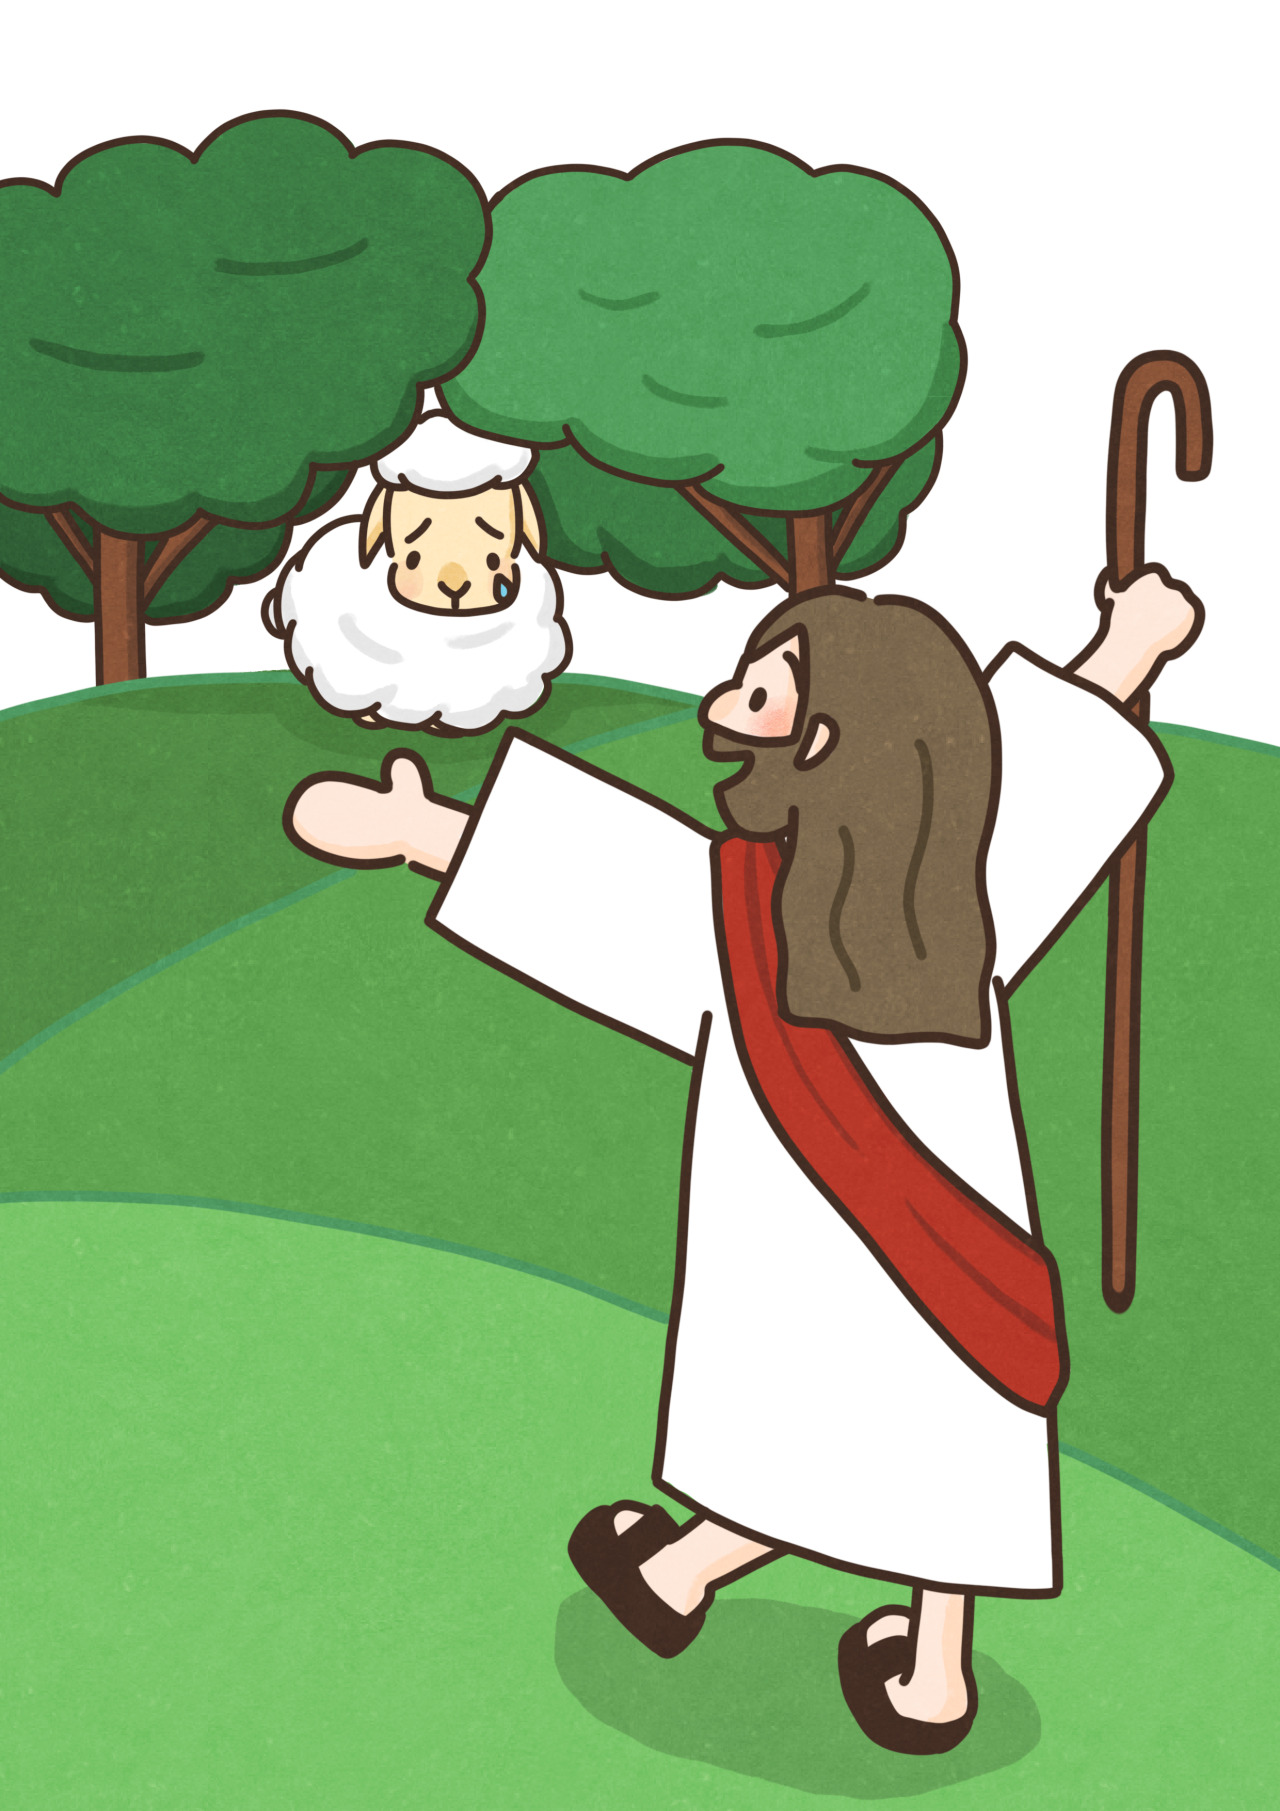 こひつじイラスト 聖書の無料イラスト素材 迷子の羊 イエス様はよい羊飼い１